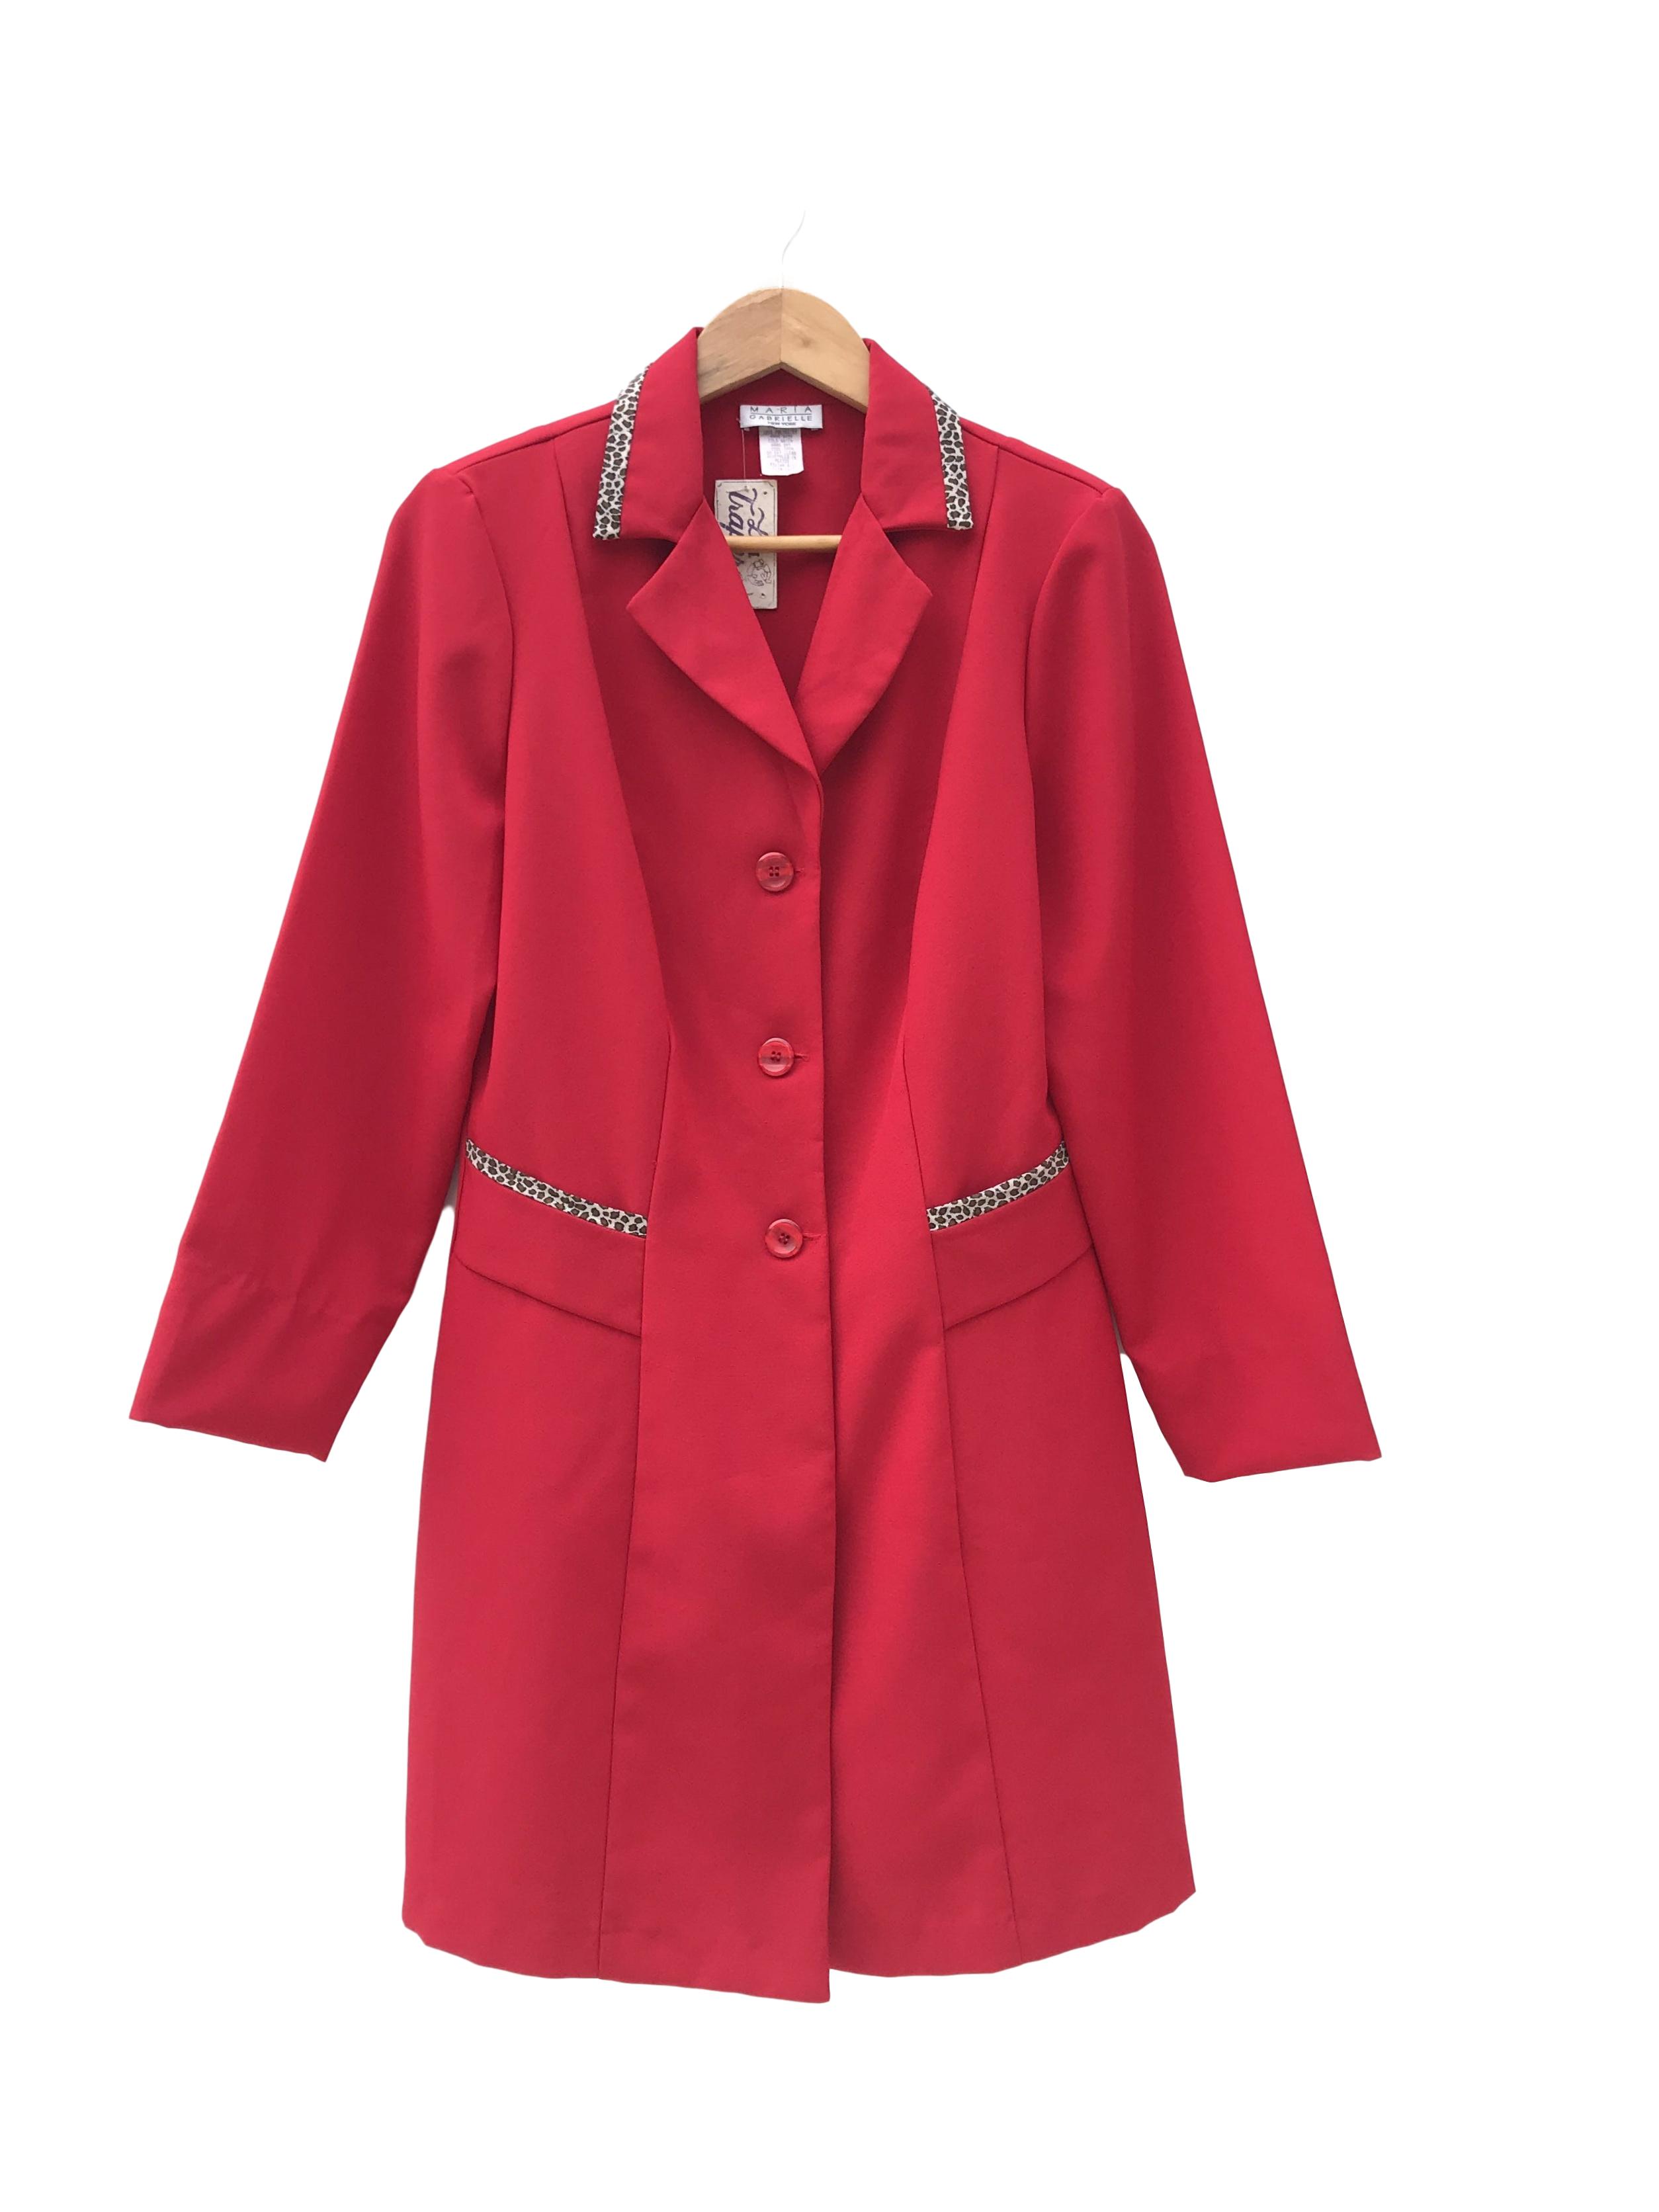 Abrigo vintage de tela tipo sastre roja con ribetes animal print en bolsillos y cuello. Largo 88cm